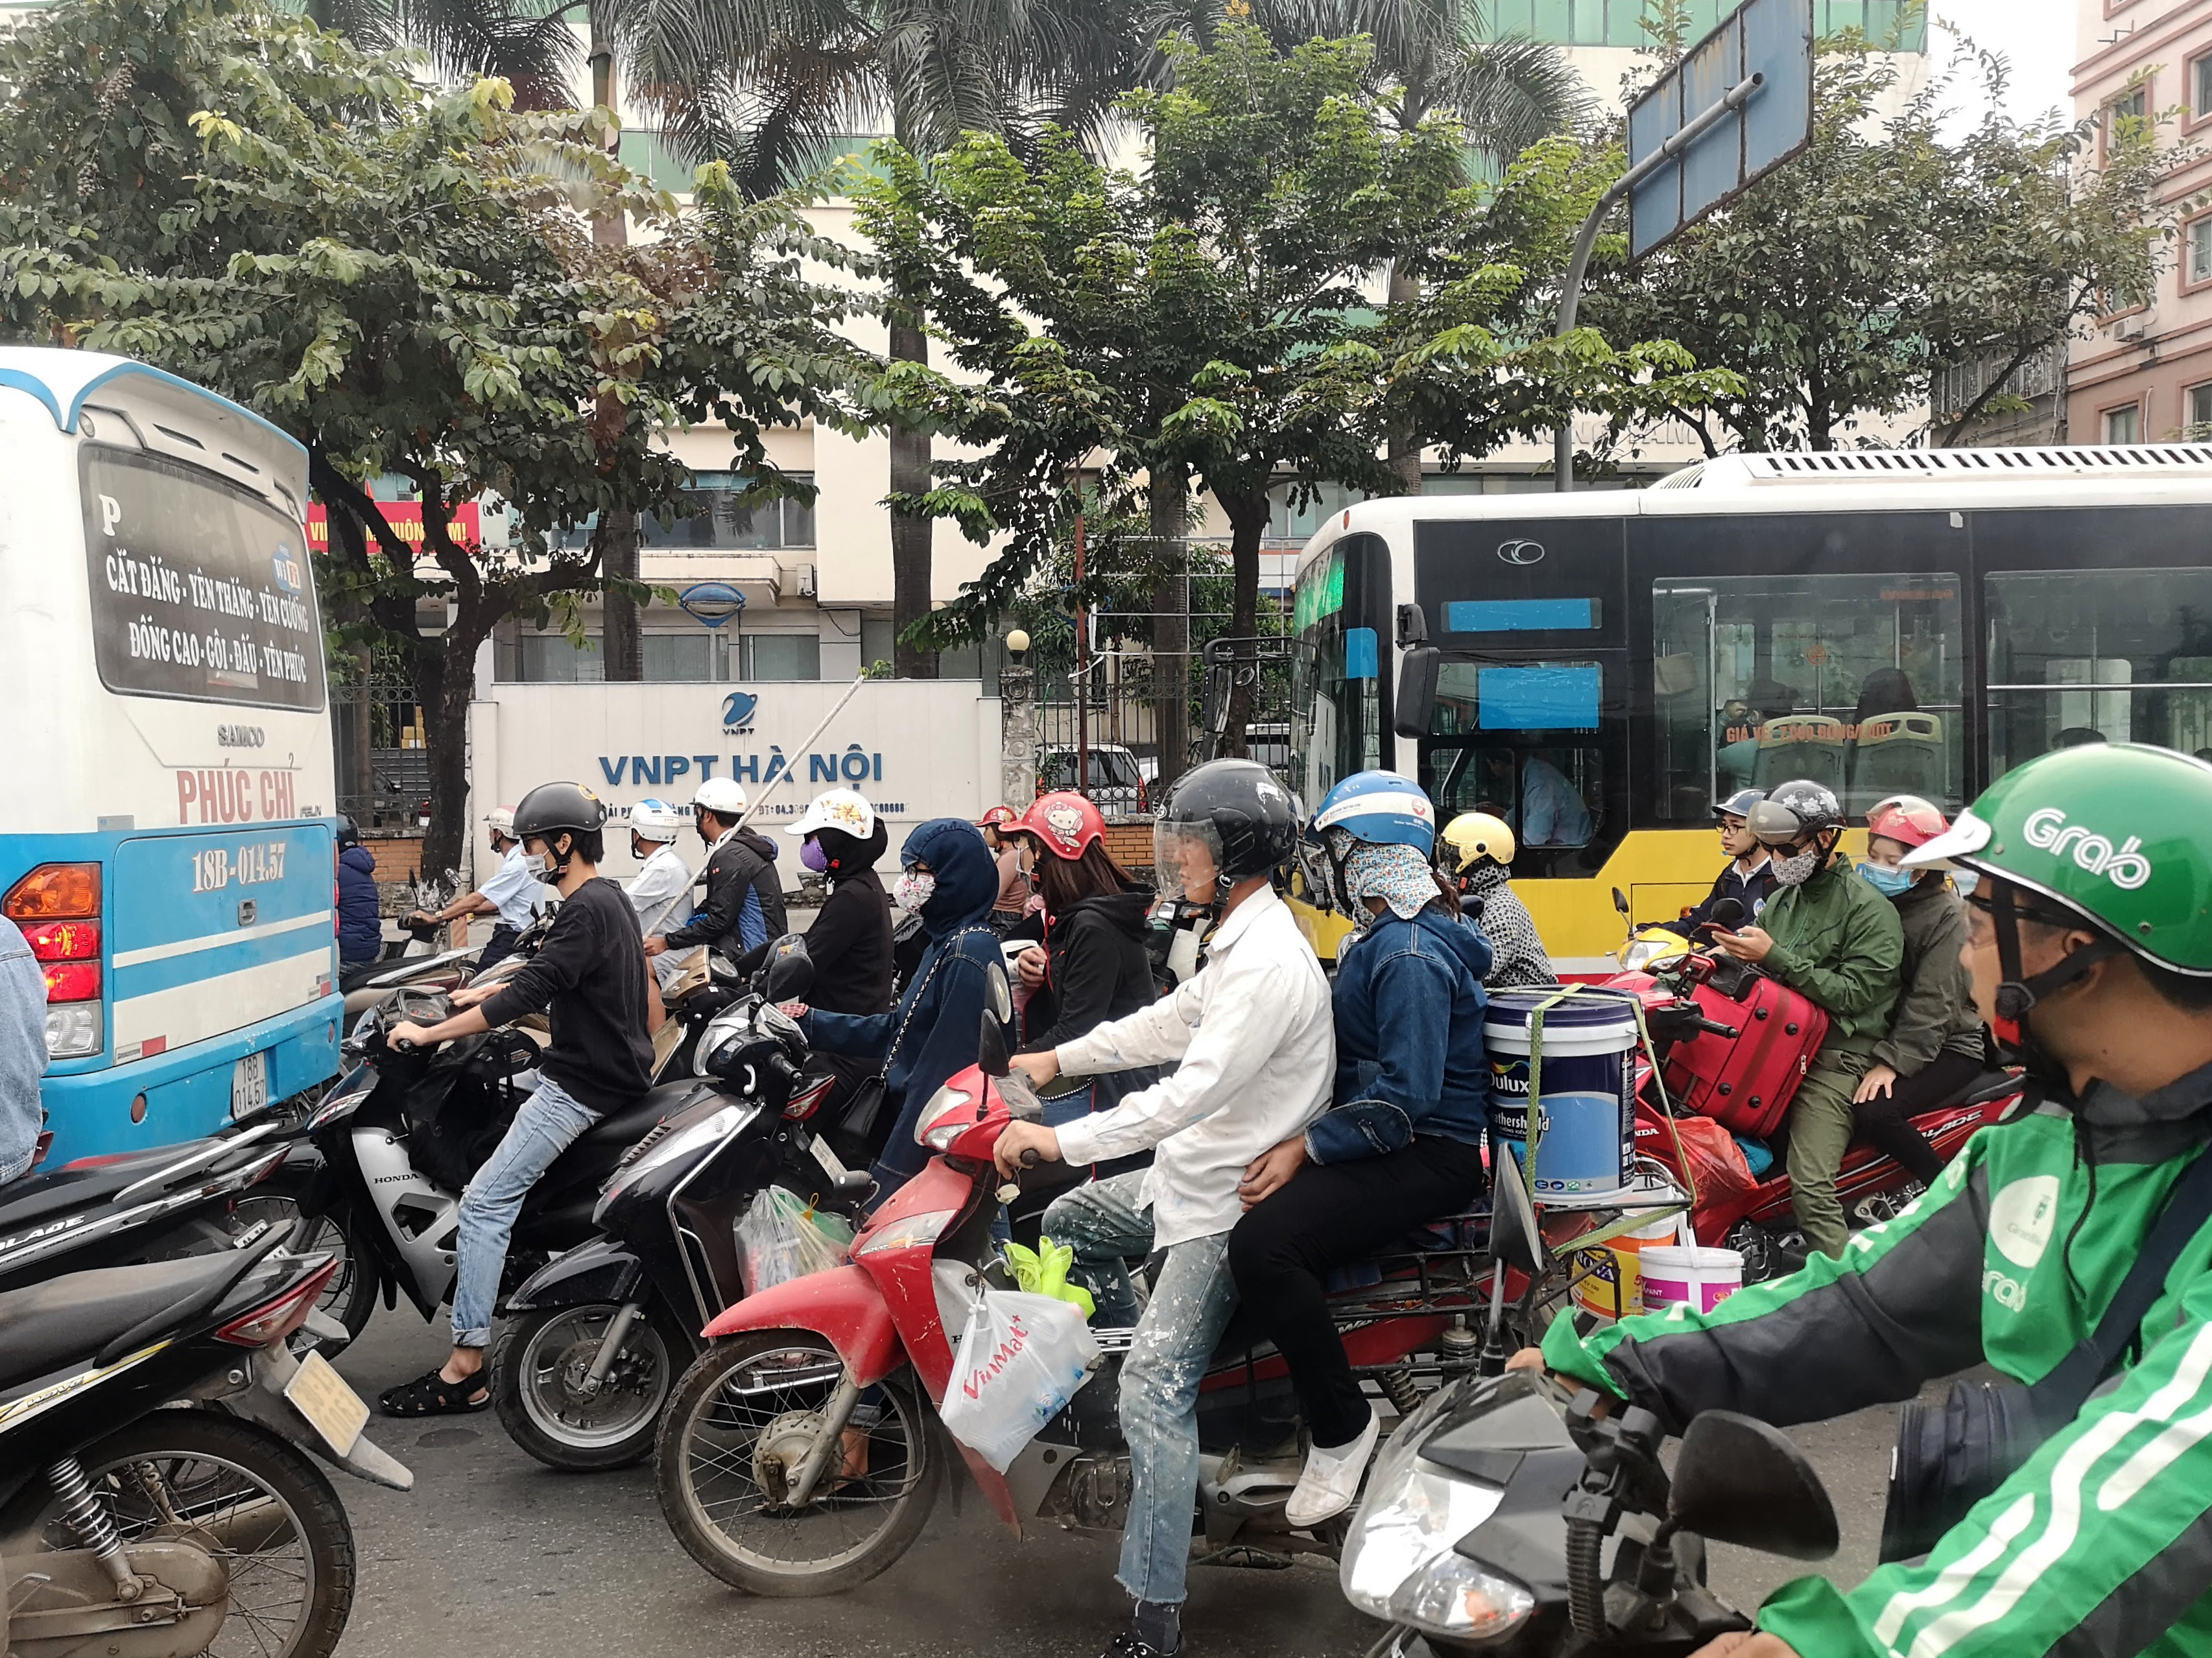 Unser ultimative Vietnam-Reiseführer